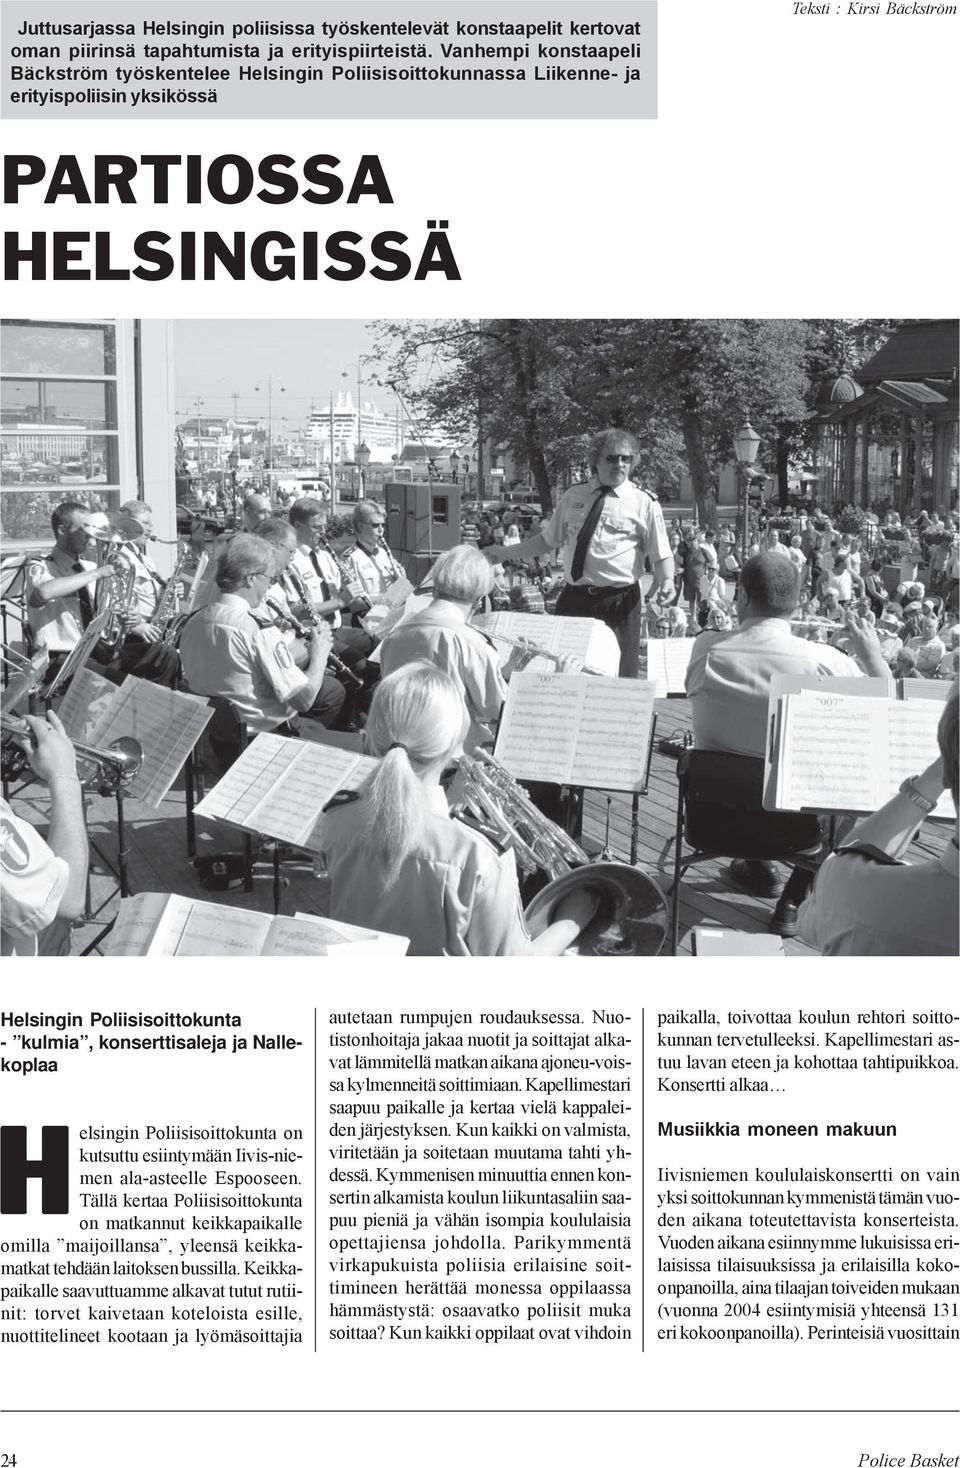 kulmia, konserttisaleja ja Nallekoplaa elsingin Poliisisoittokunta on kutsuttu esiintymään Iivis-niemen ala-asteelle Espooseen.